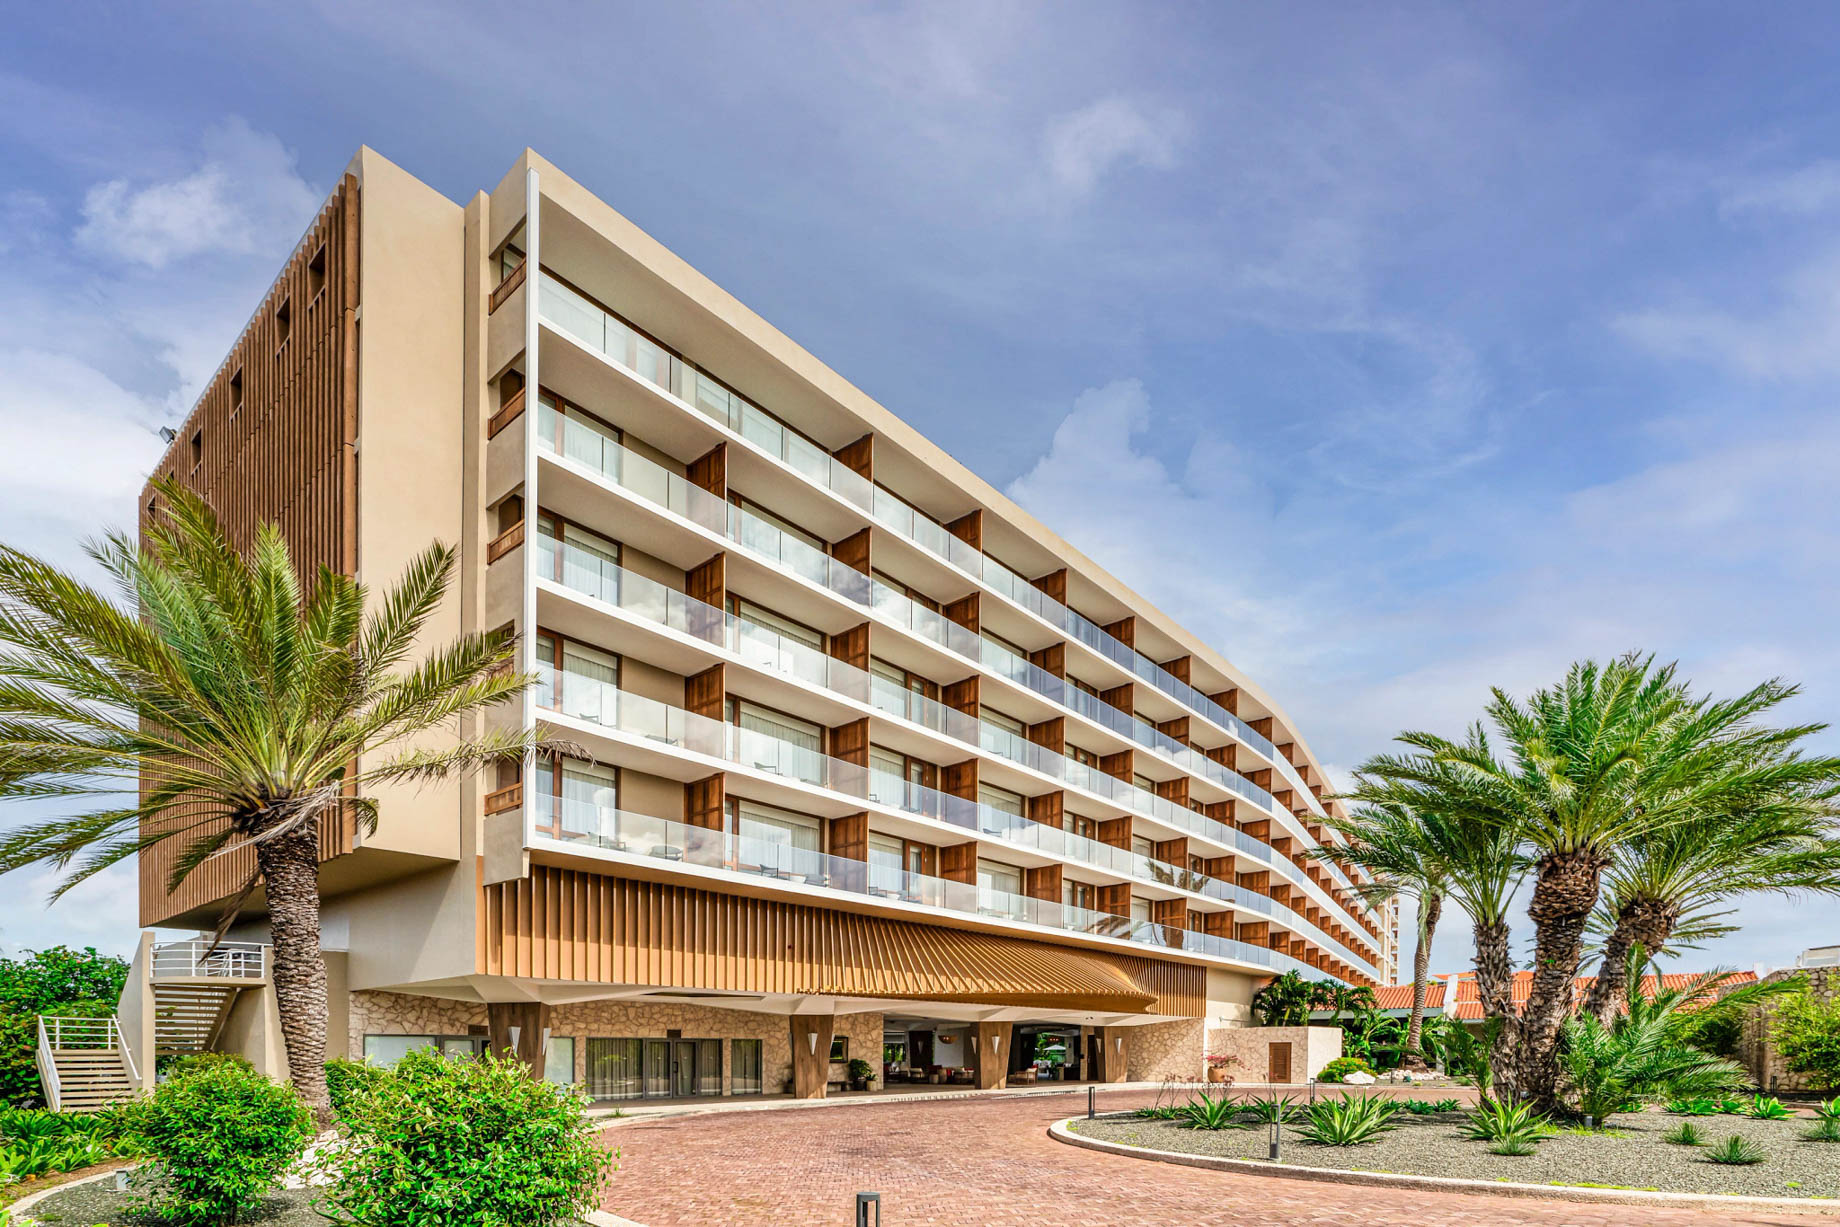 Dreams Curaçao Resort, Spa & Casino – Willemstad, Curaçao – Hotel Exterior Entrance